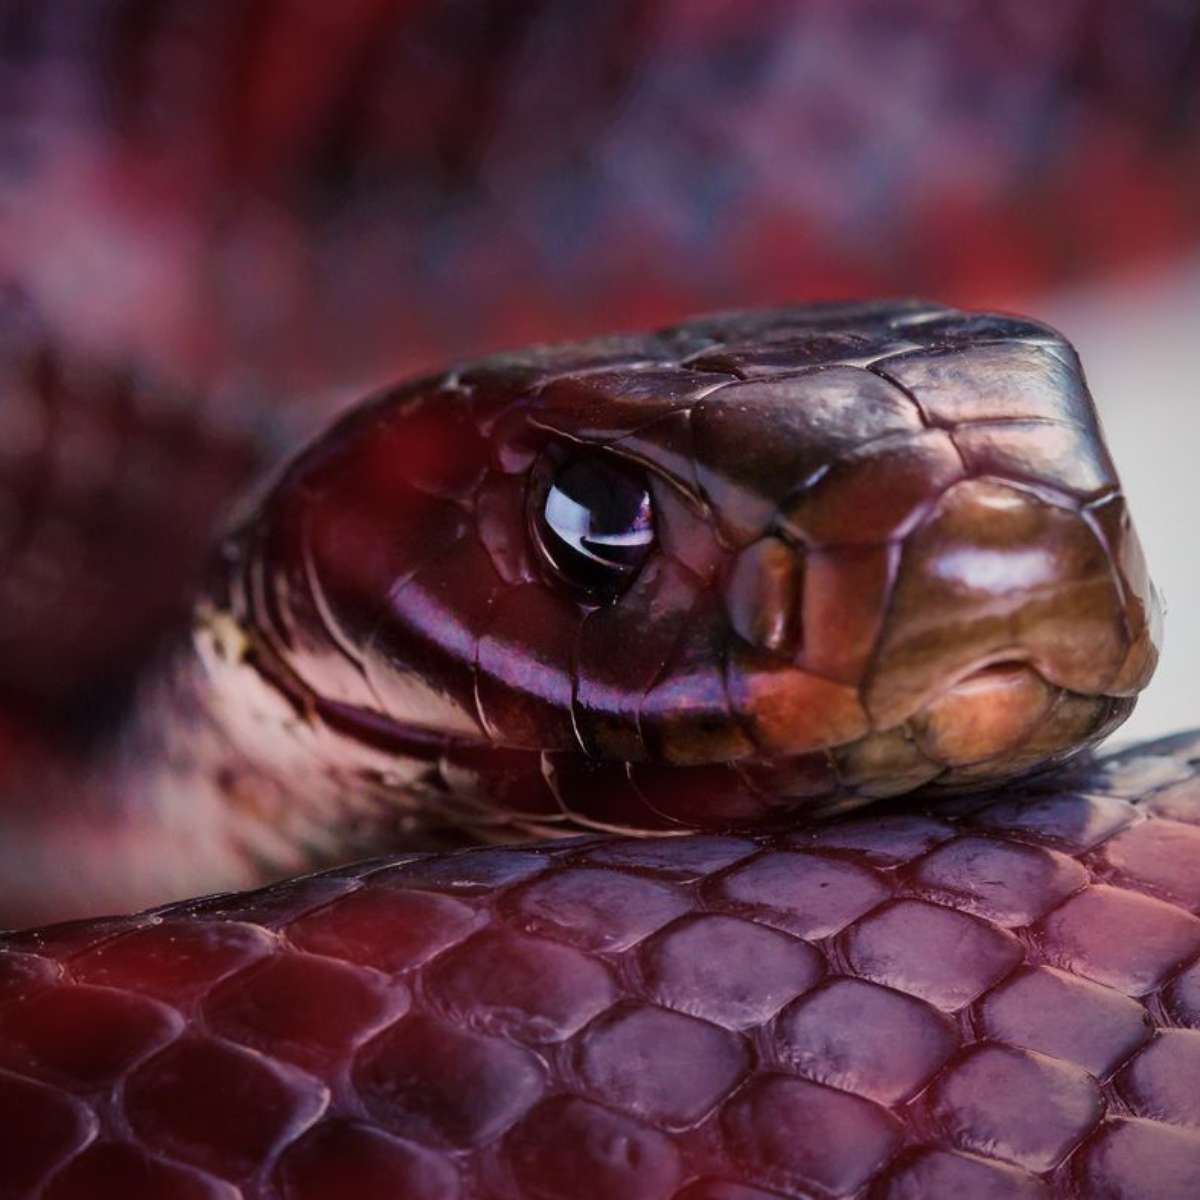 Biólogo desvenda mito da cobra vermelha, que viralizou